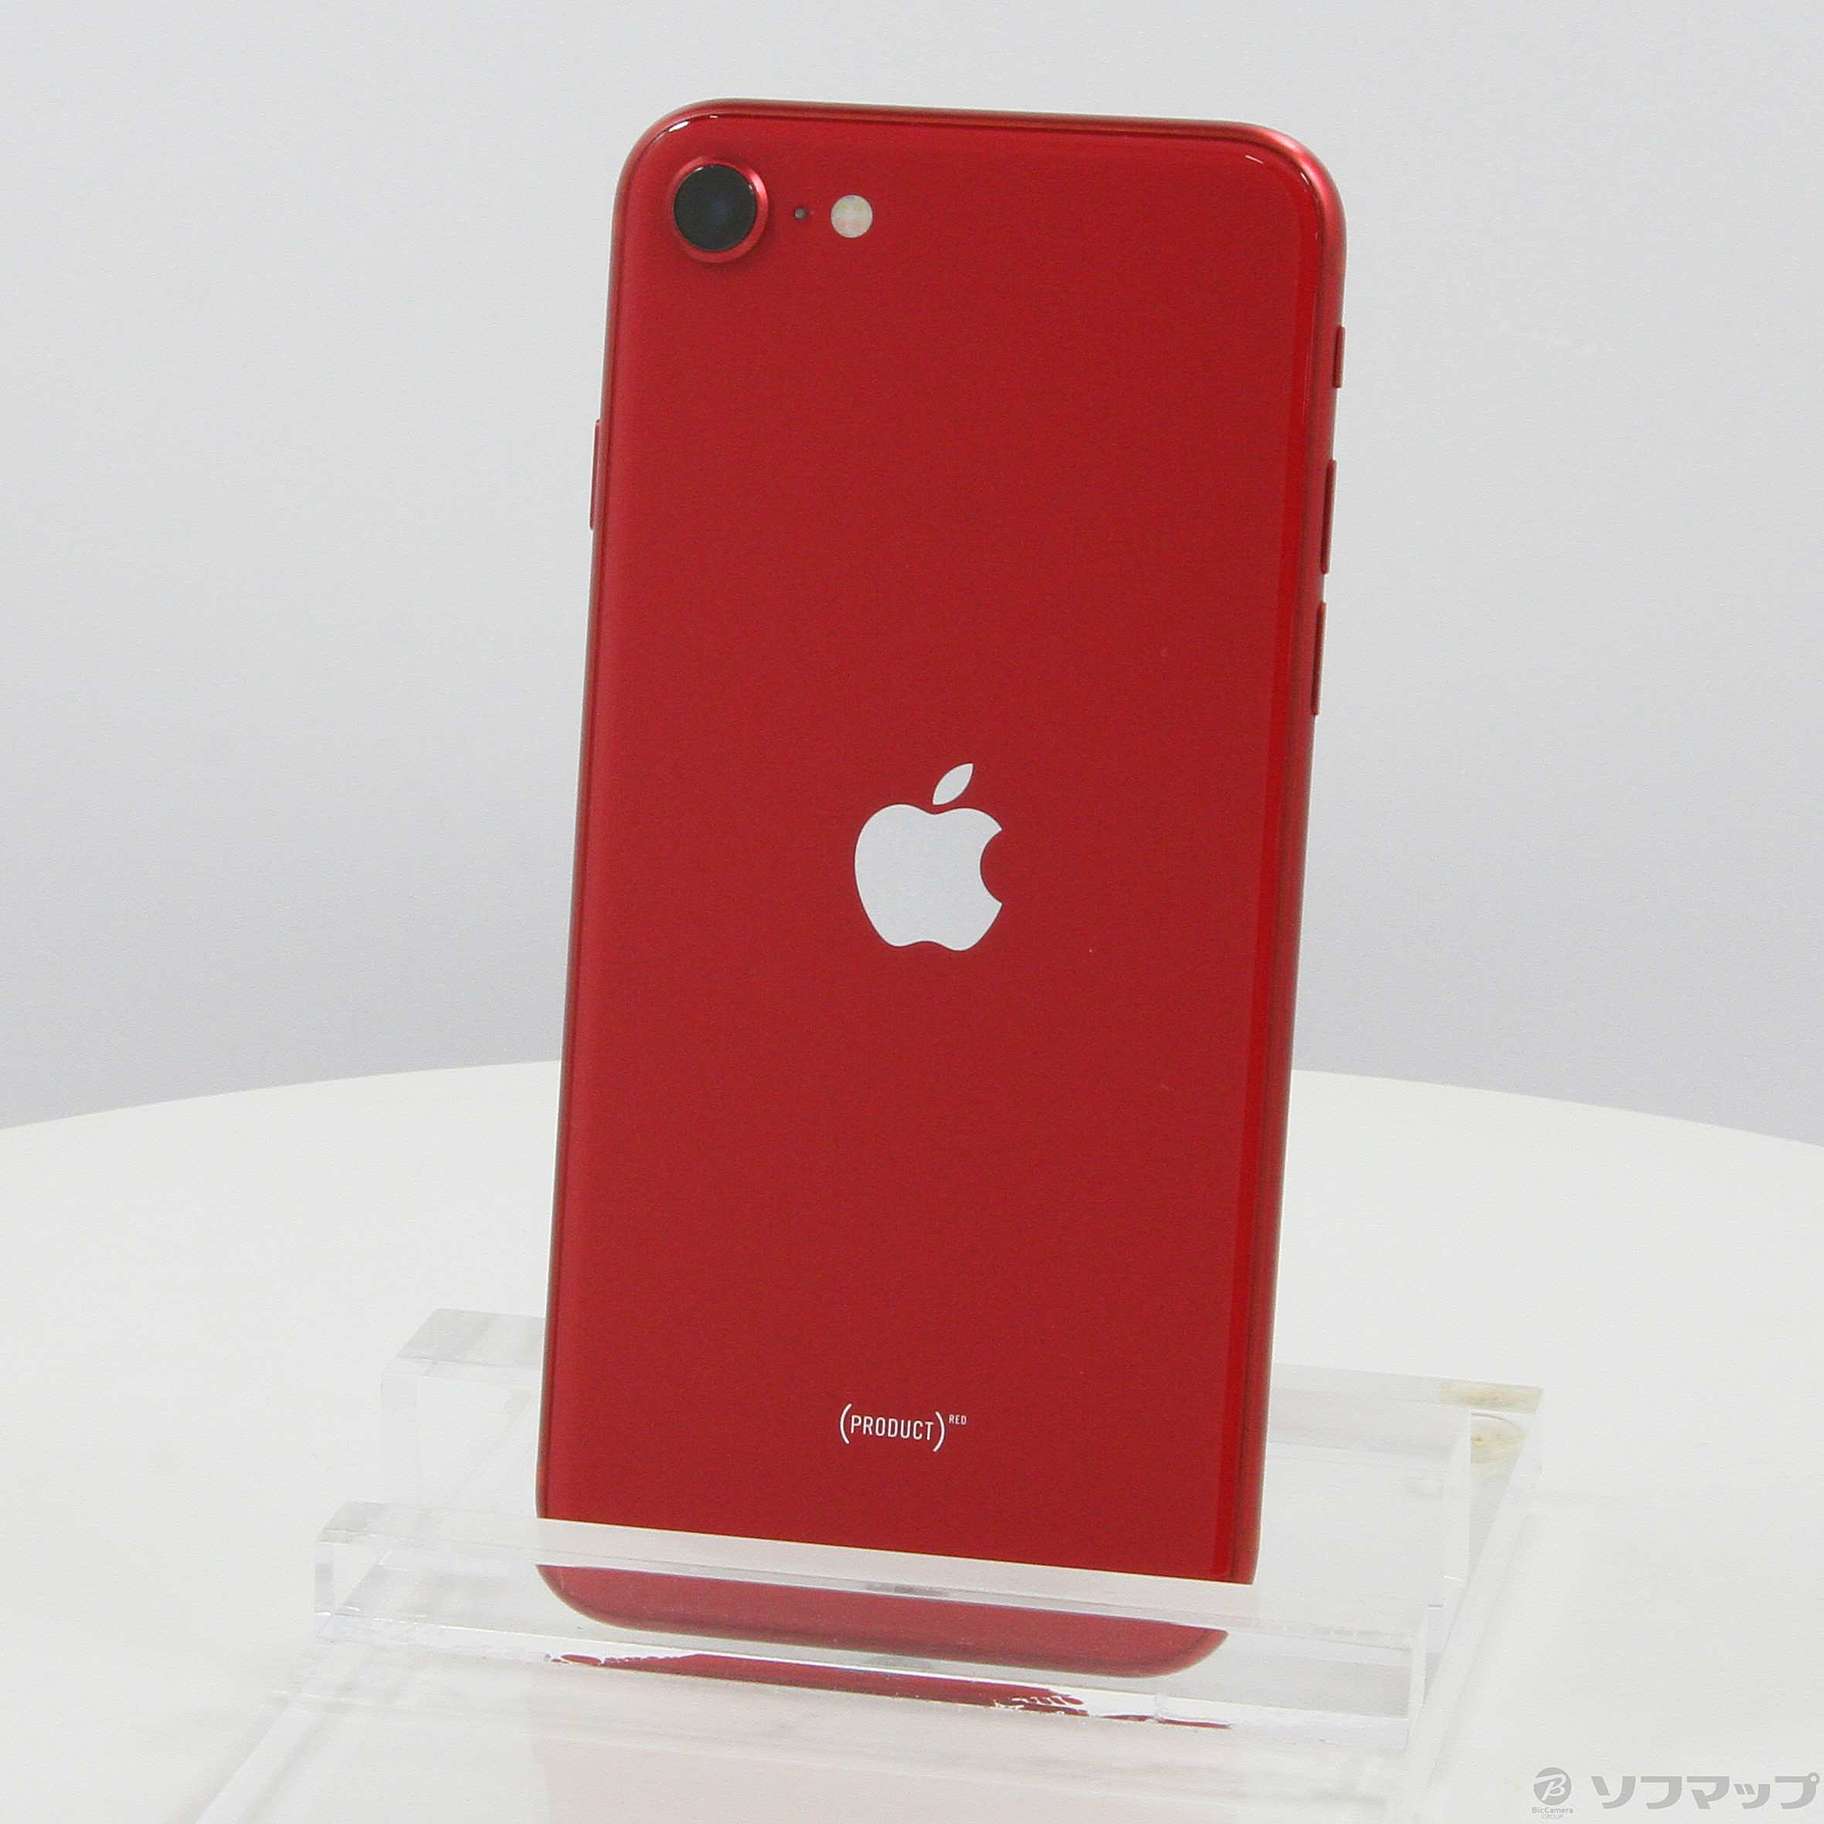 iPhone SE 第2世代 赤 レッド 256GB SIMフリー-